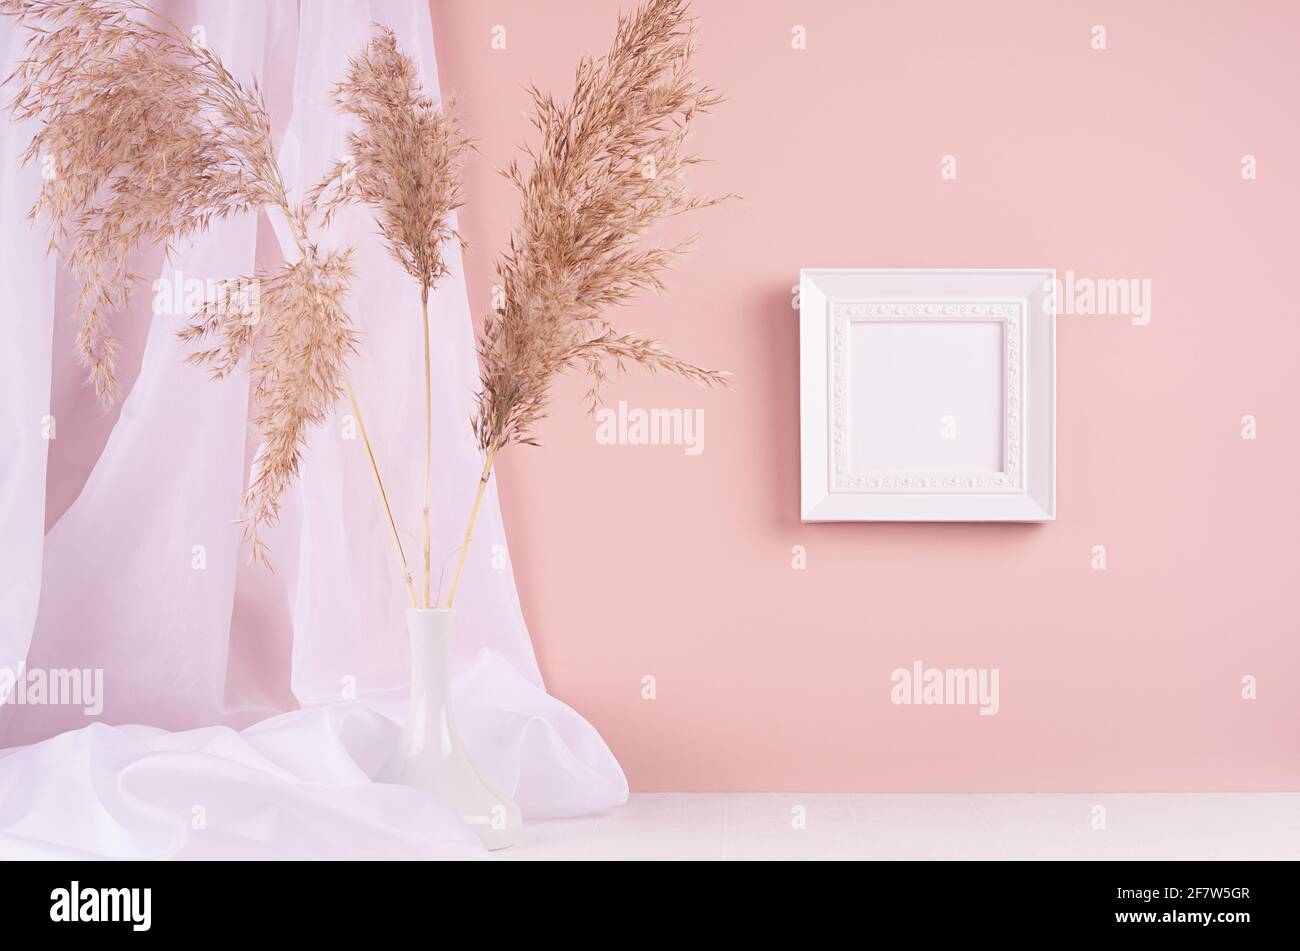 Décoration calme avec cadre photo carré vierge pour le texte suspendu sur un mur rose, rideau en soie, bouquet de roseaux moelleux sur une table en bois blanc. Modèle pour disp Banque D'Images